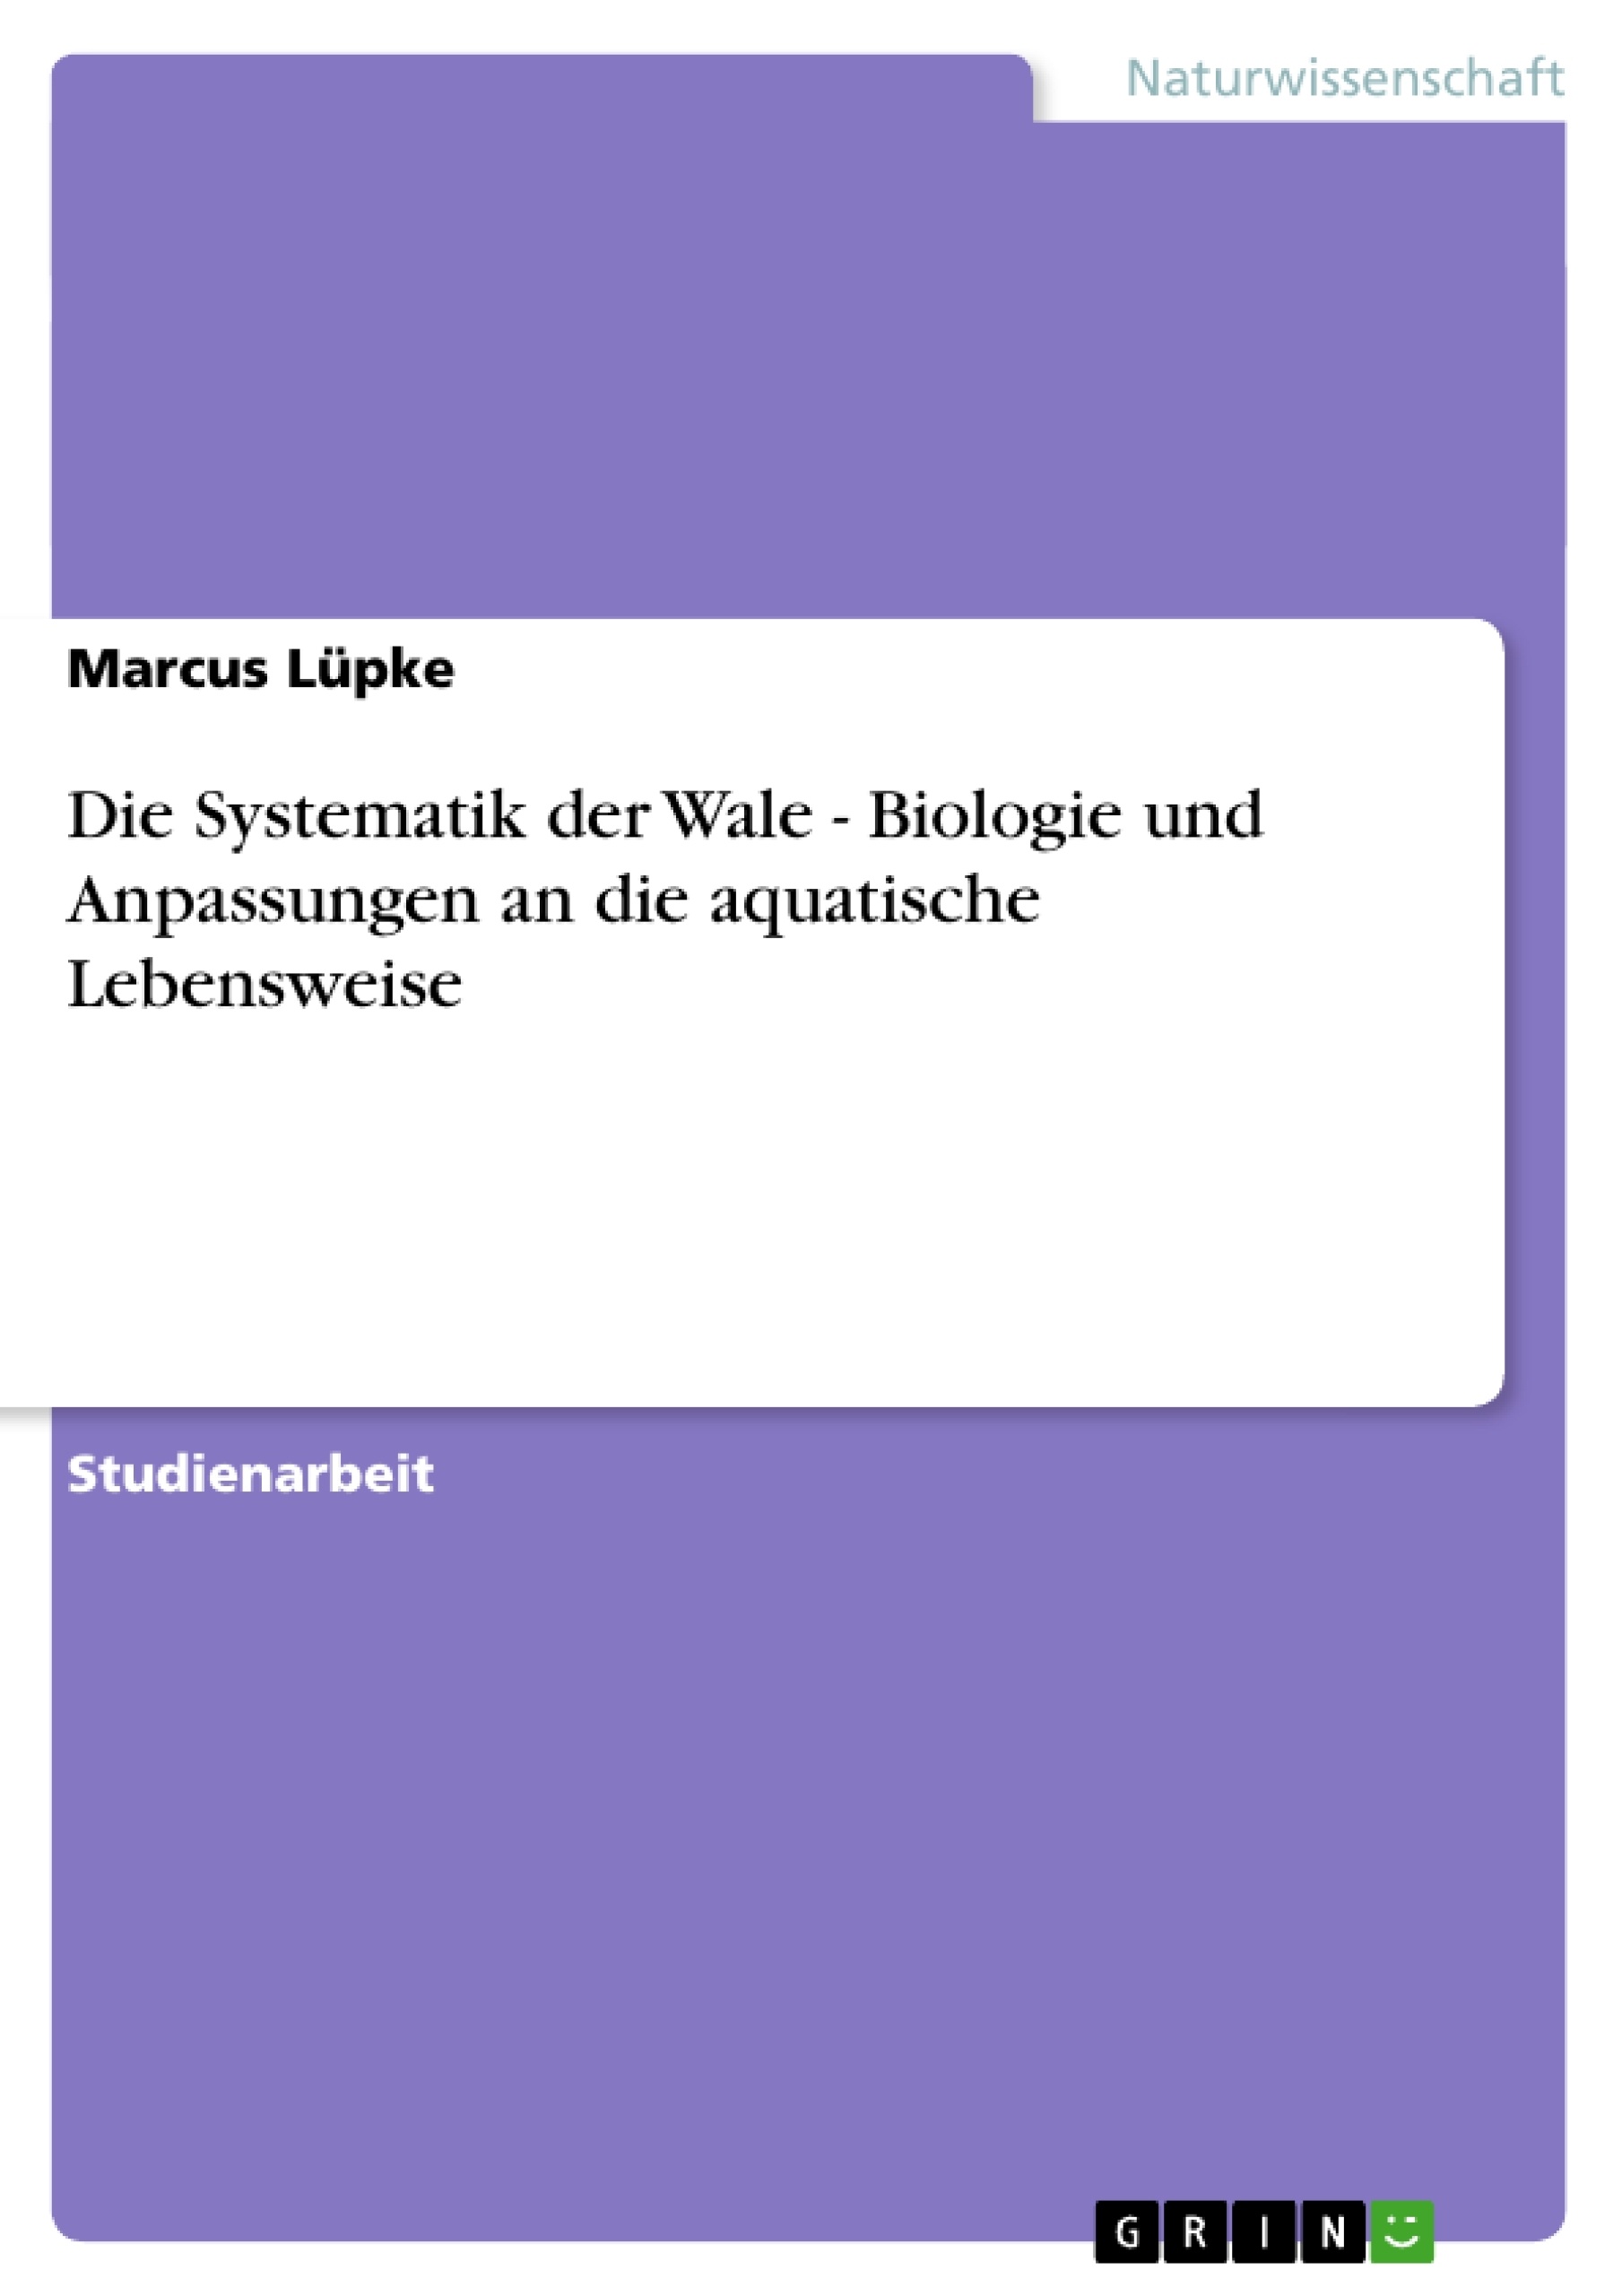 Título: Die Systematik der Wale - Biologie und Anpassungen an die aquatische Lebensweise